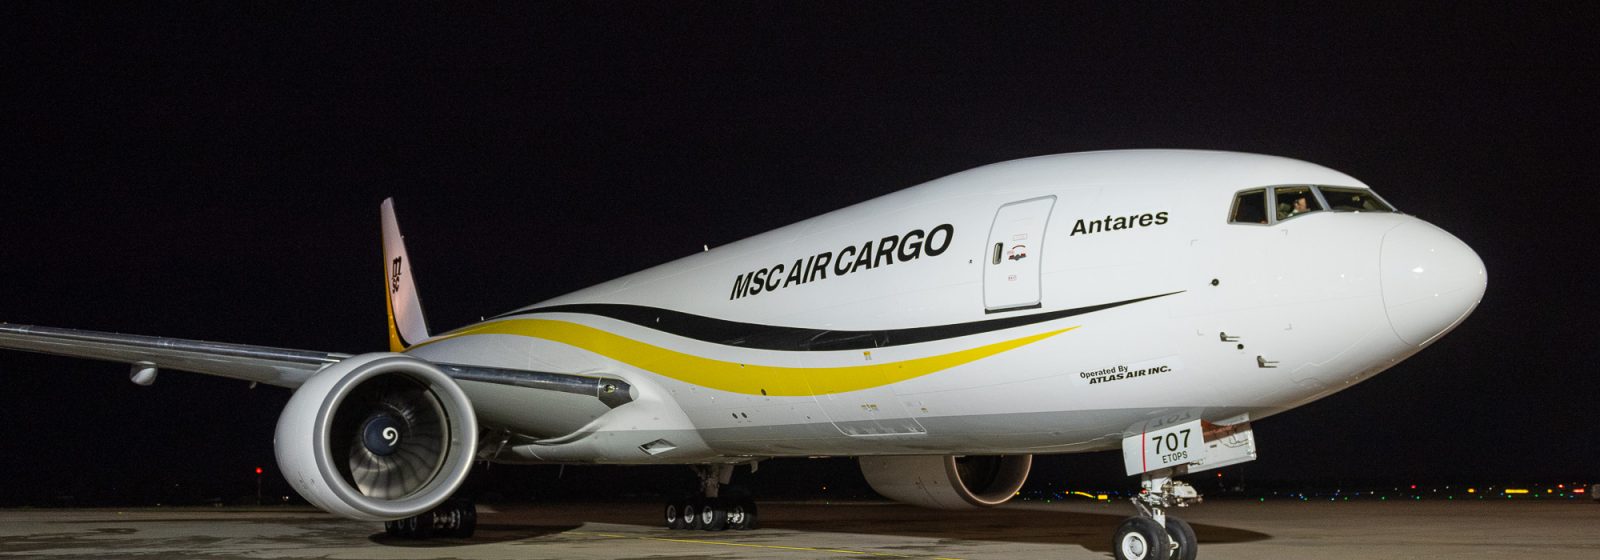 Vrachtvliegtuig van MSC Air Cargo landt op Liege Airport